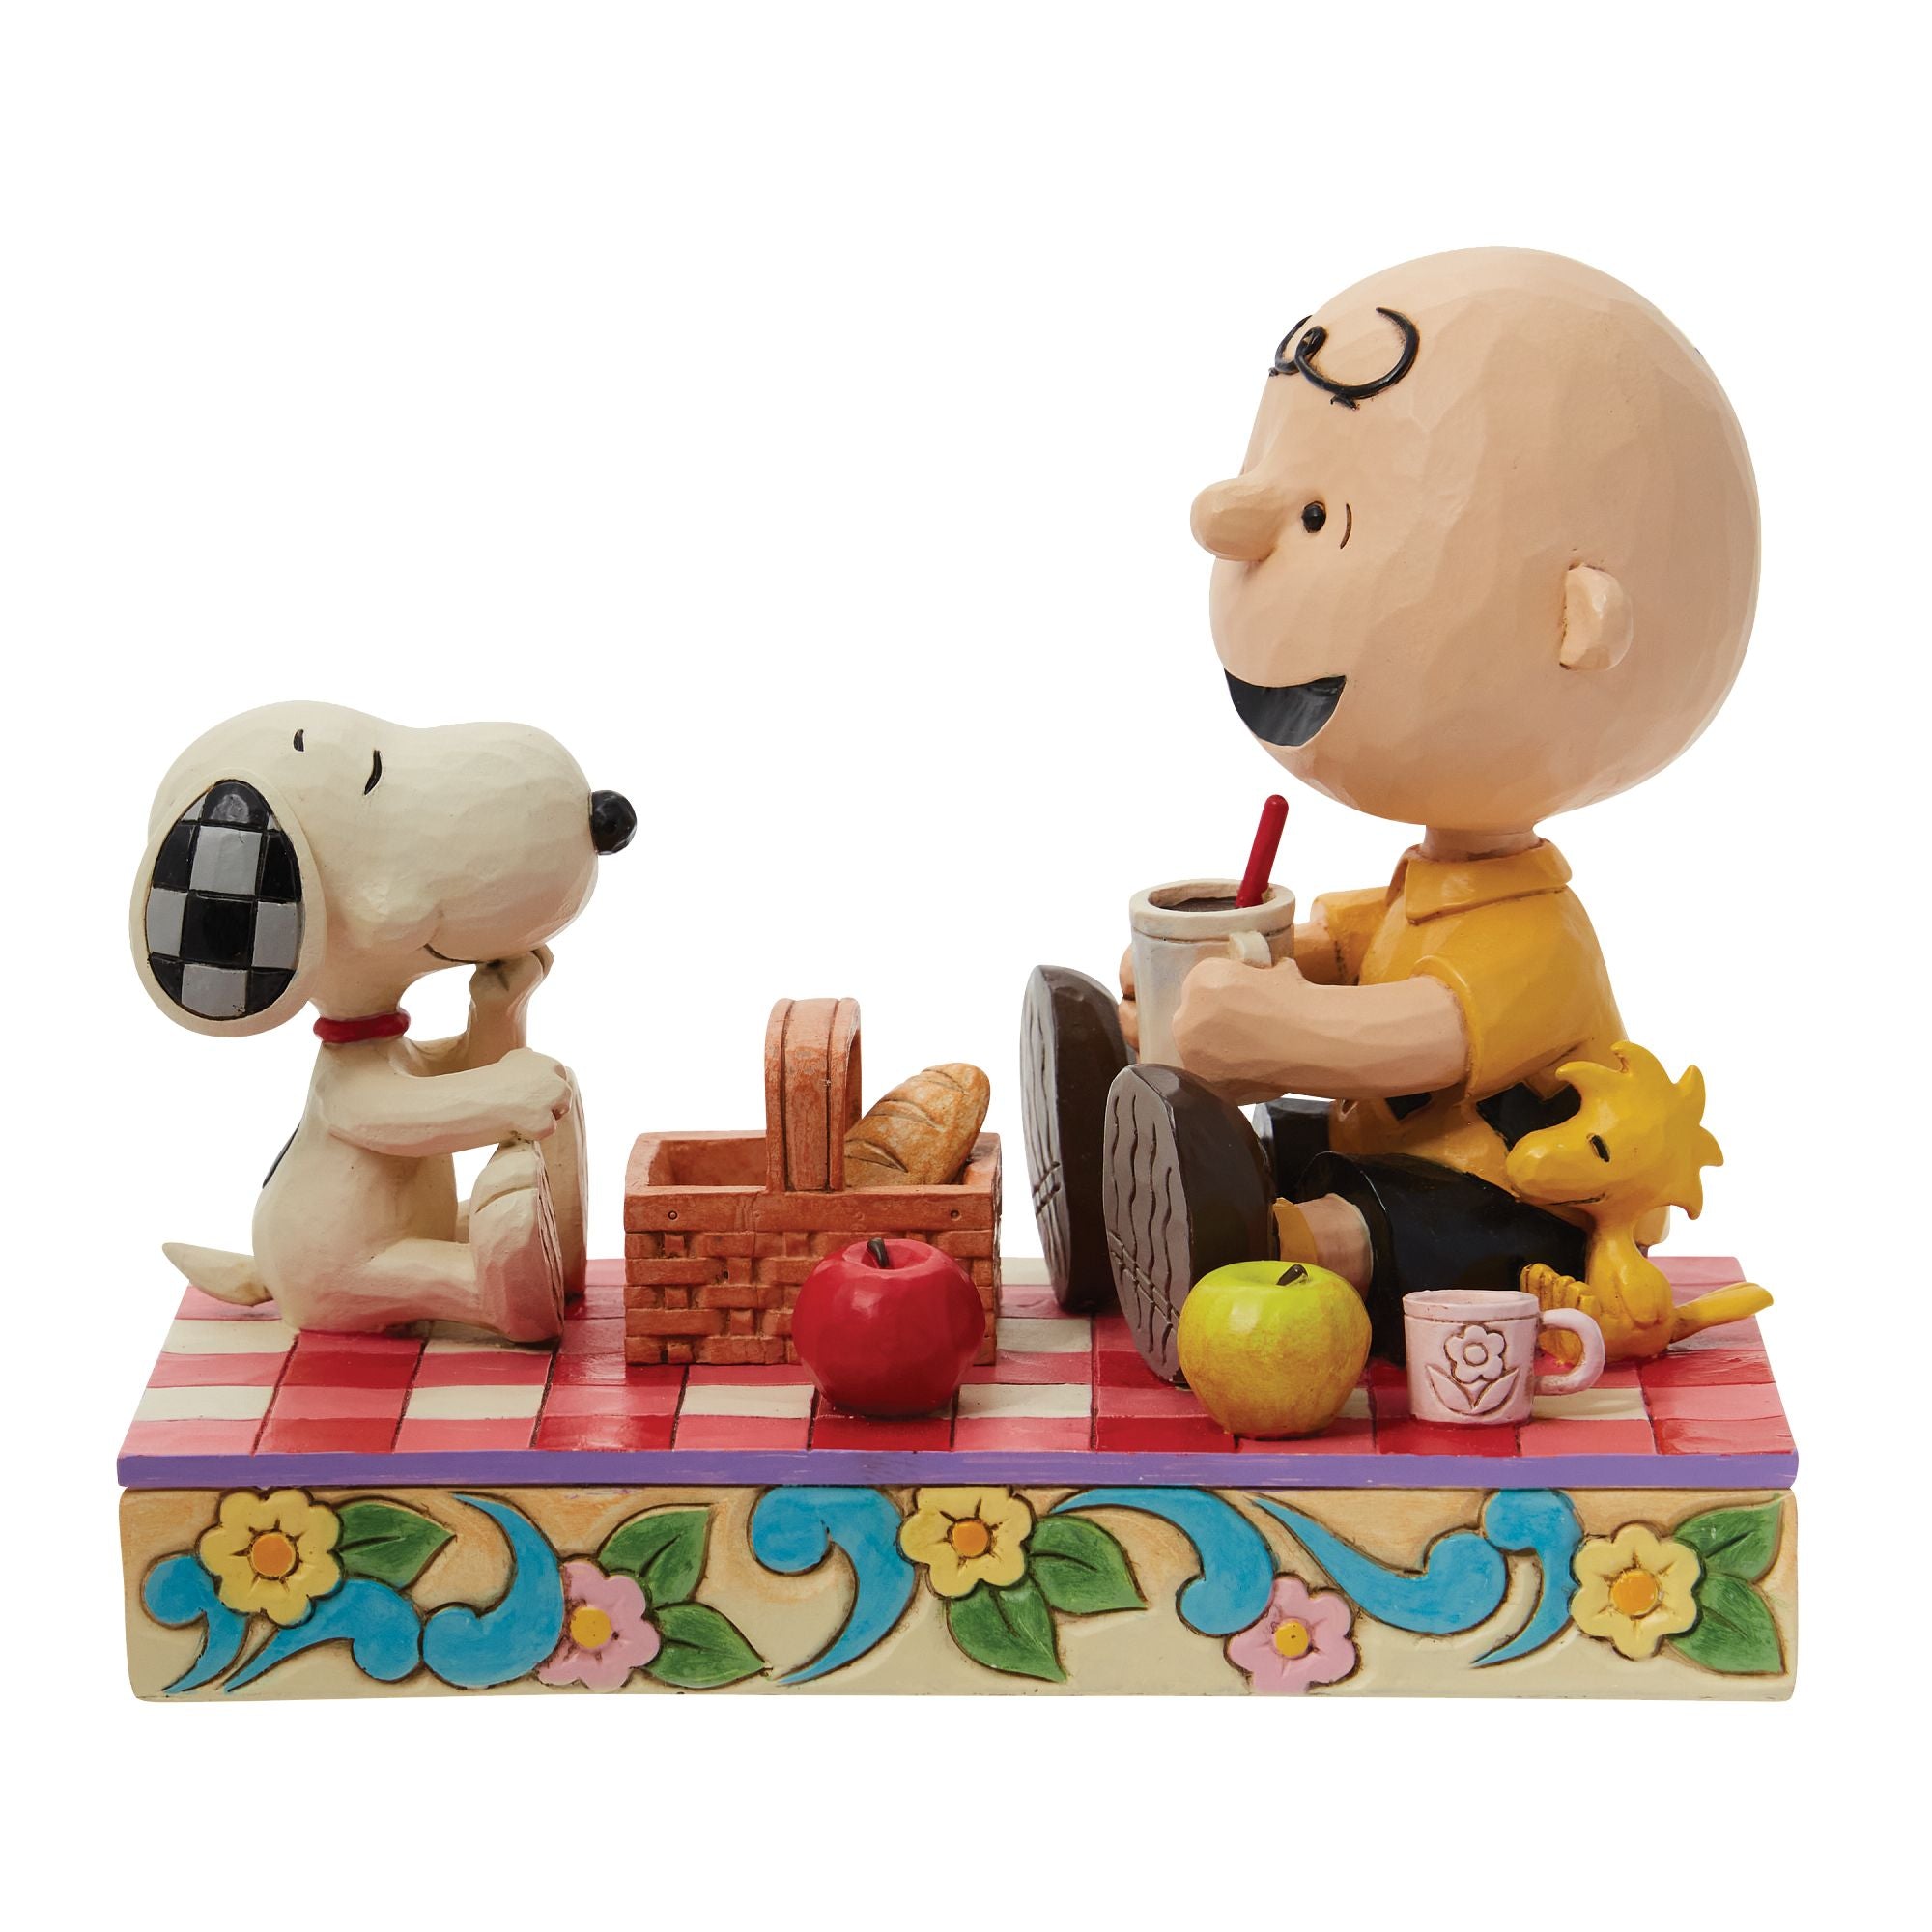 Snoopy, Charlie Brown & Woodst – Jim Shore